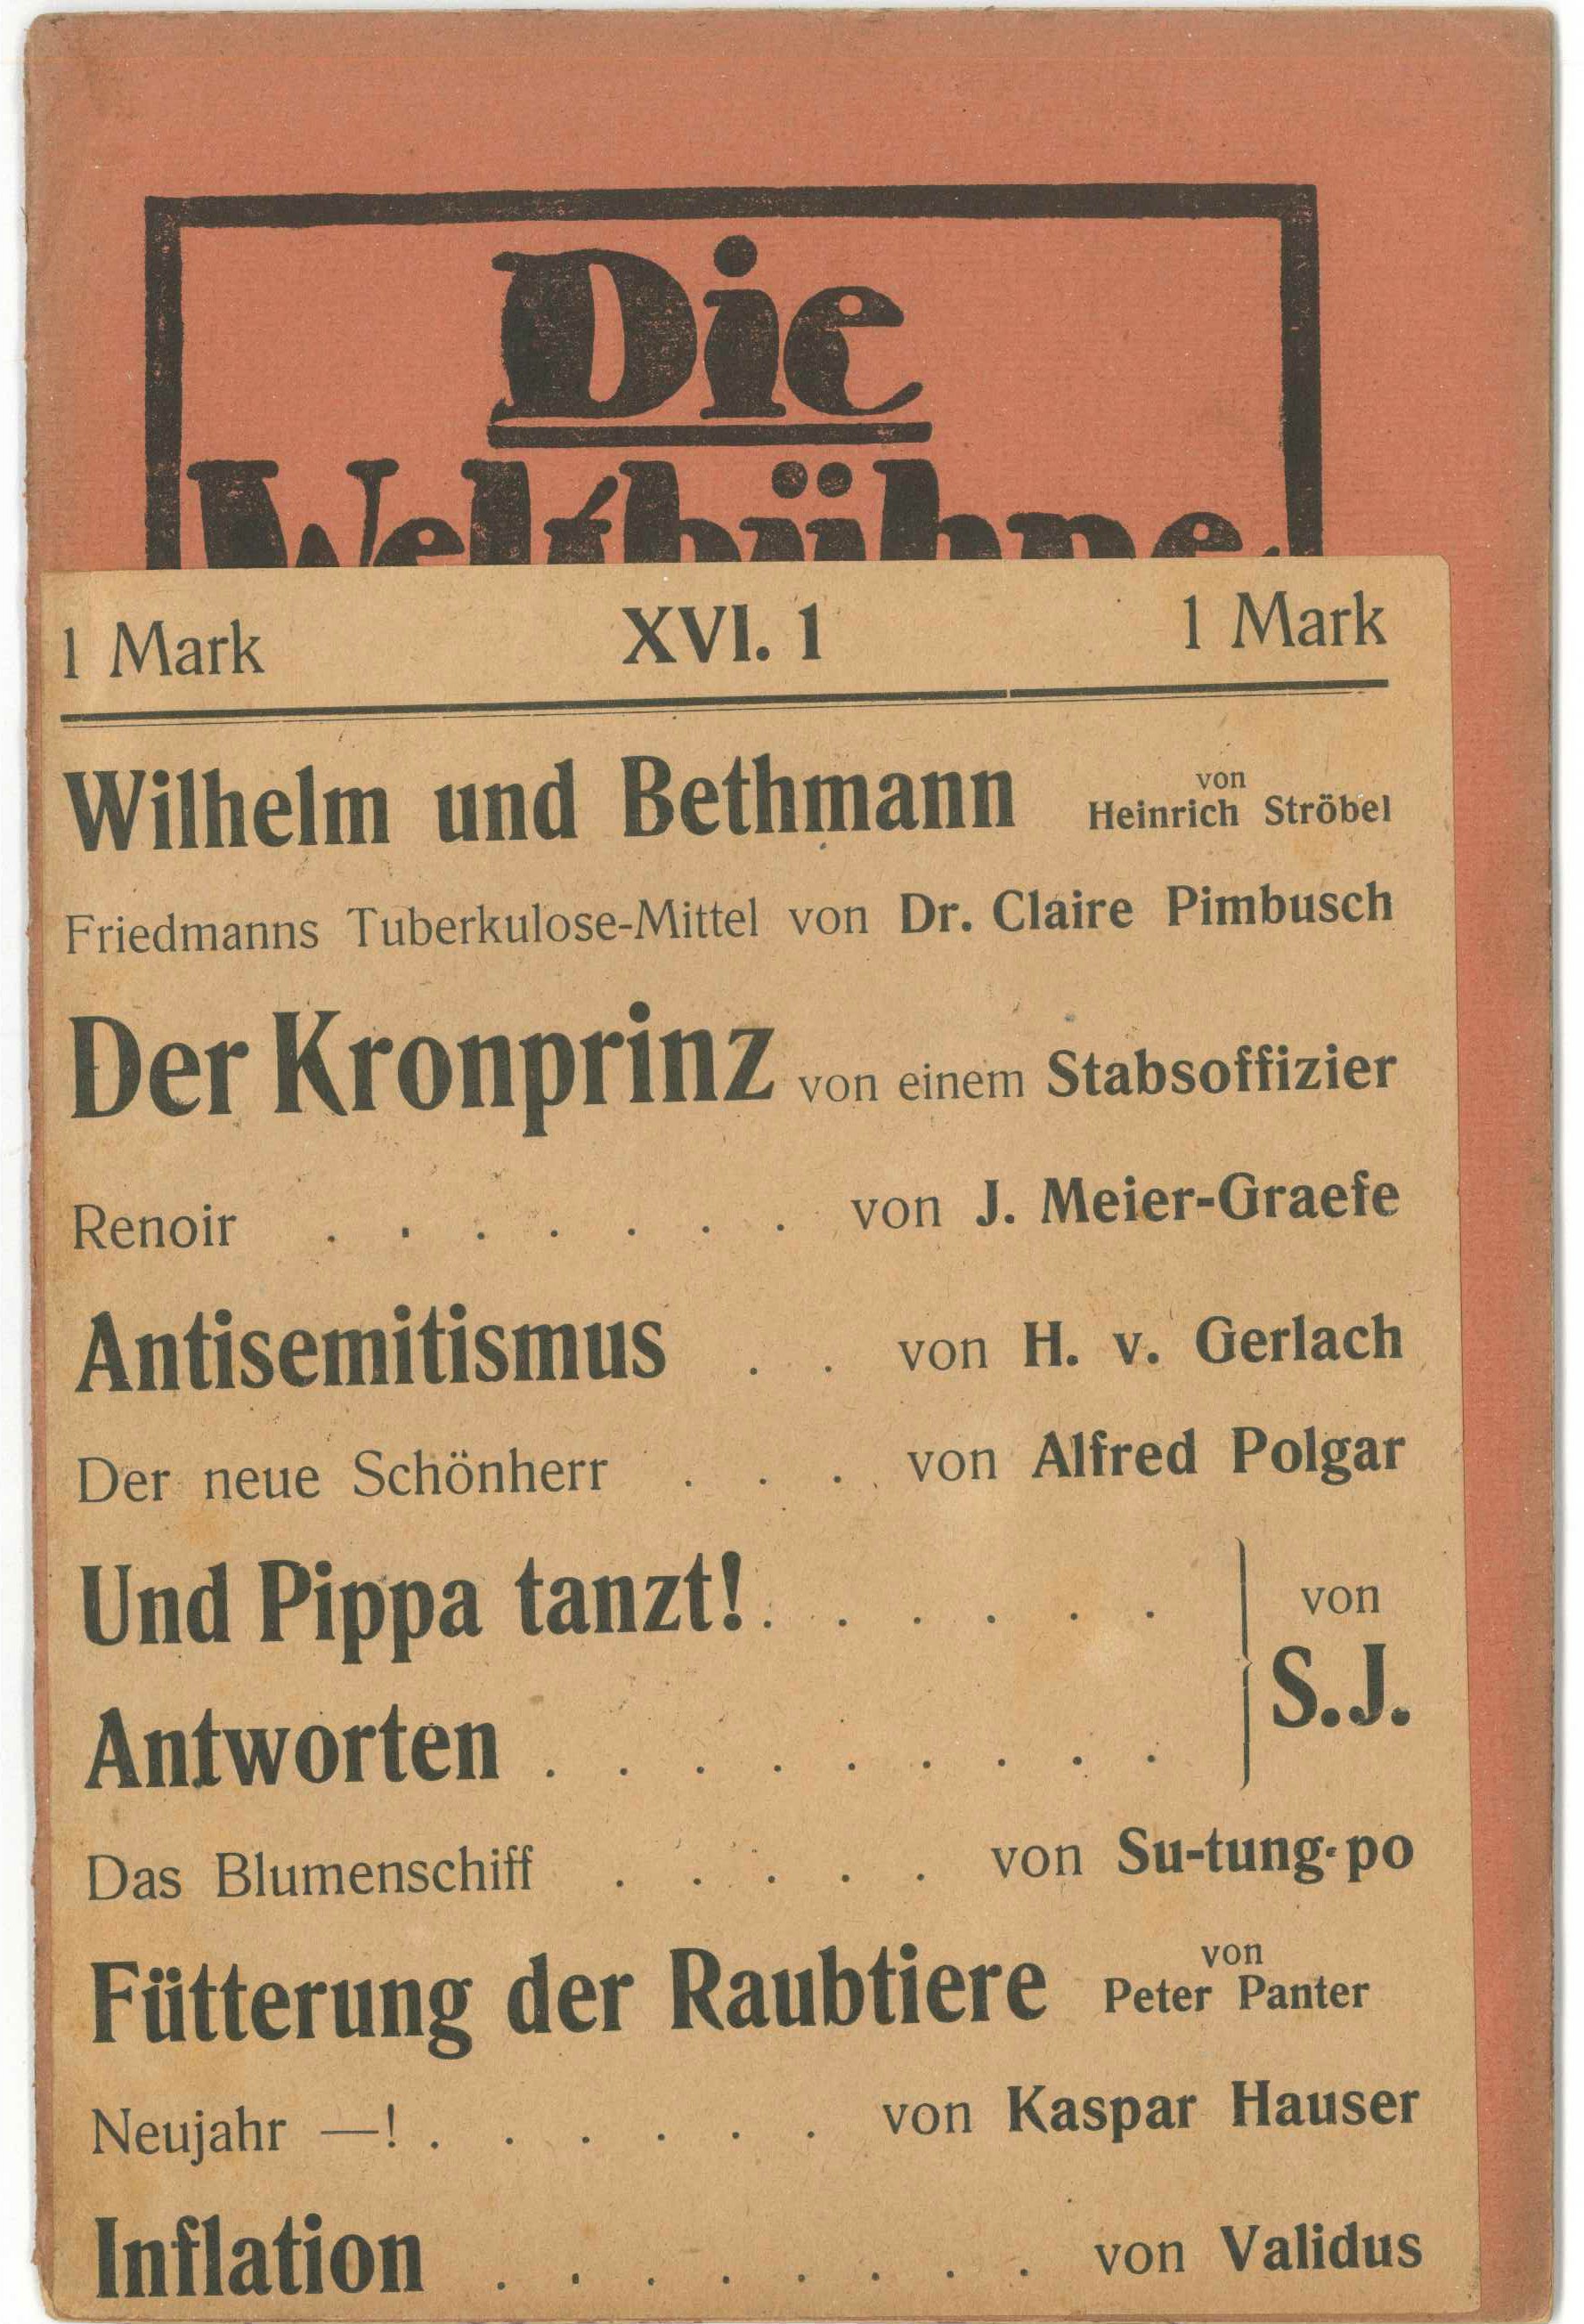 Friedmanns Tuberkulosemittel Artikel in der Weltbühne, Else Weil (Kurt Tucholsky Literaturmuseum CC BY-NC-SA)